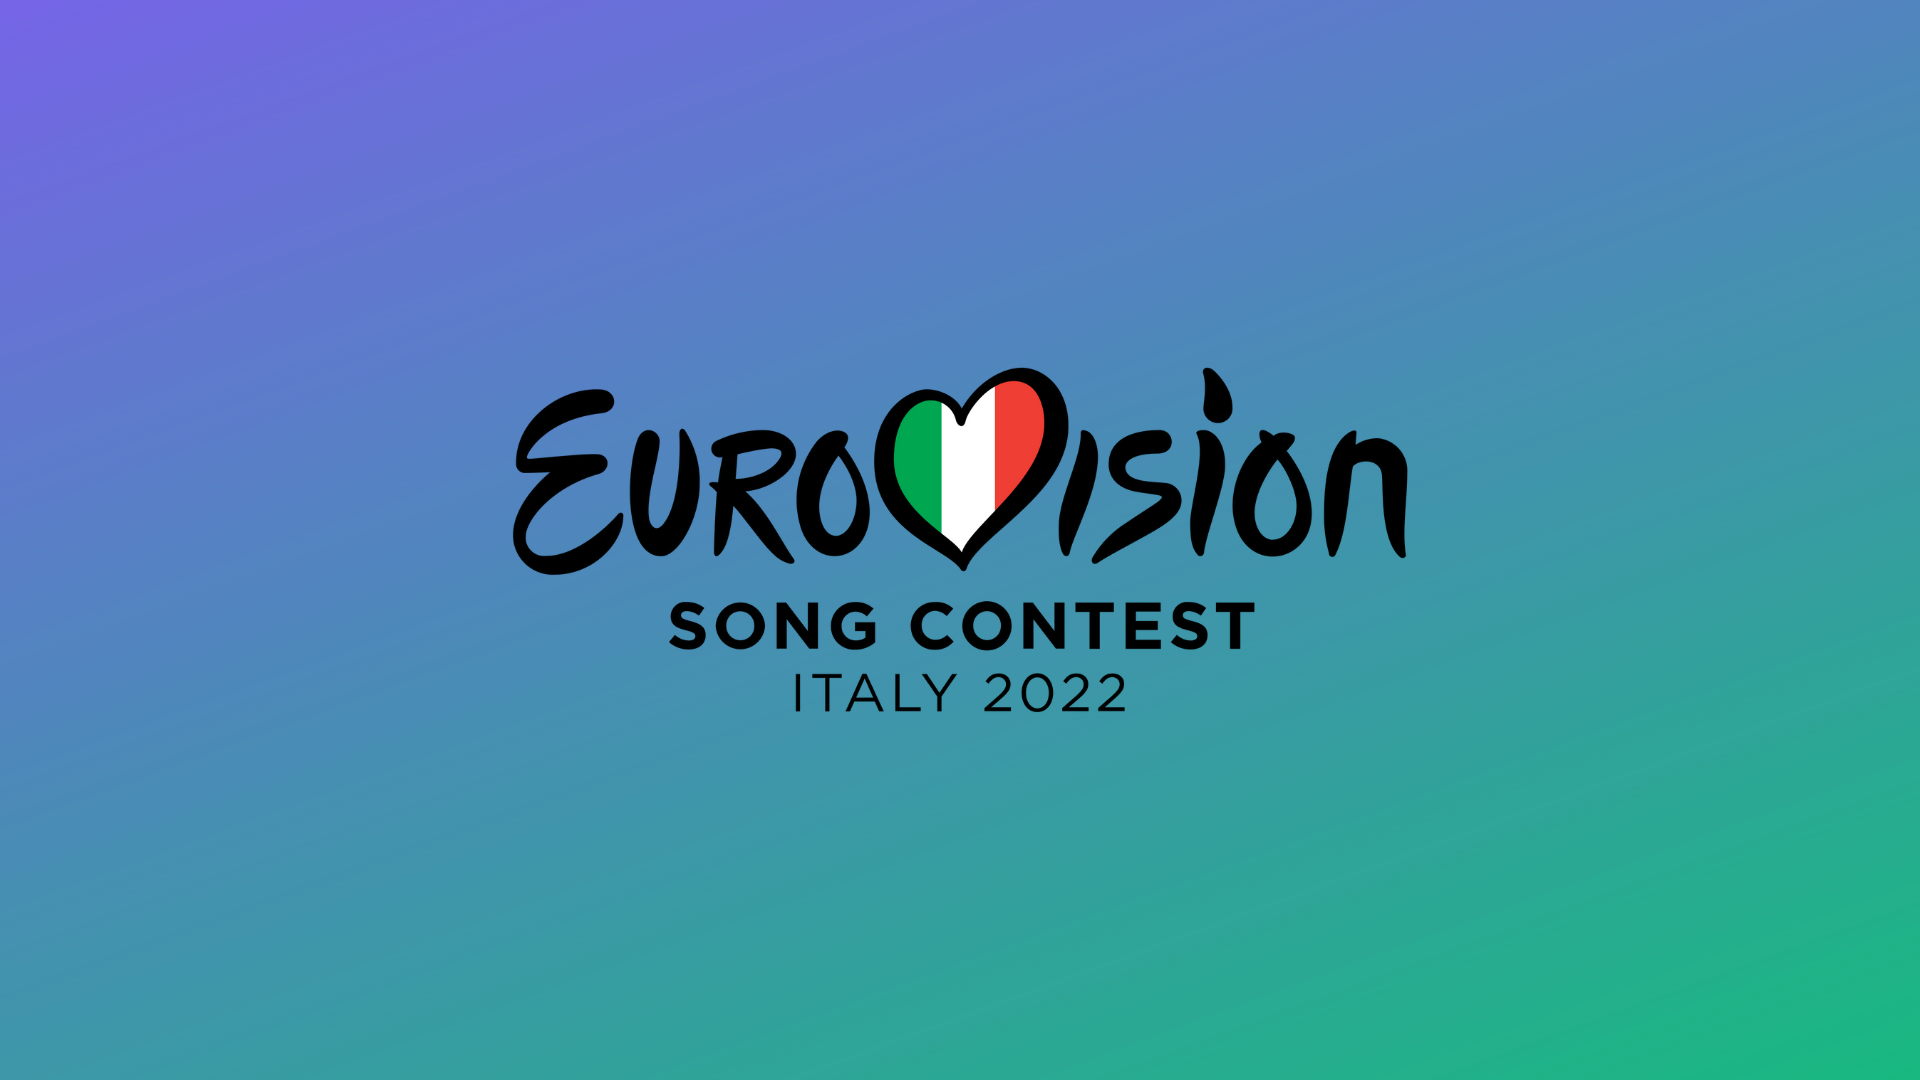 La sede del festival de Eurovisión 2022 sería confirmada el próximo lunes